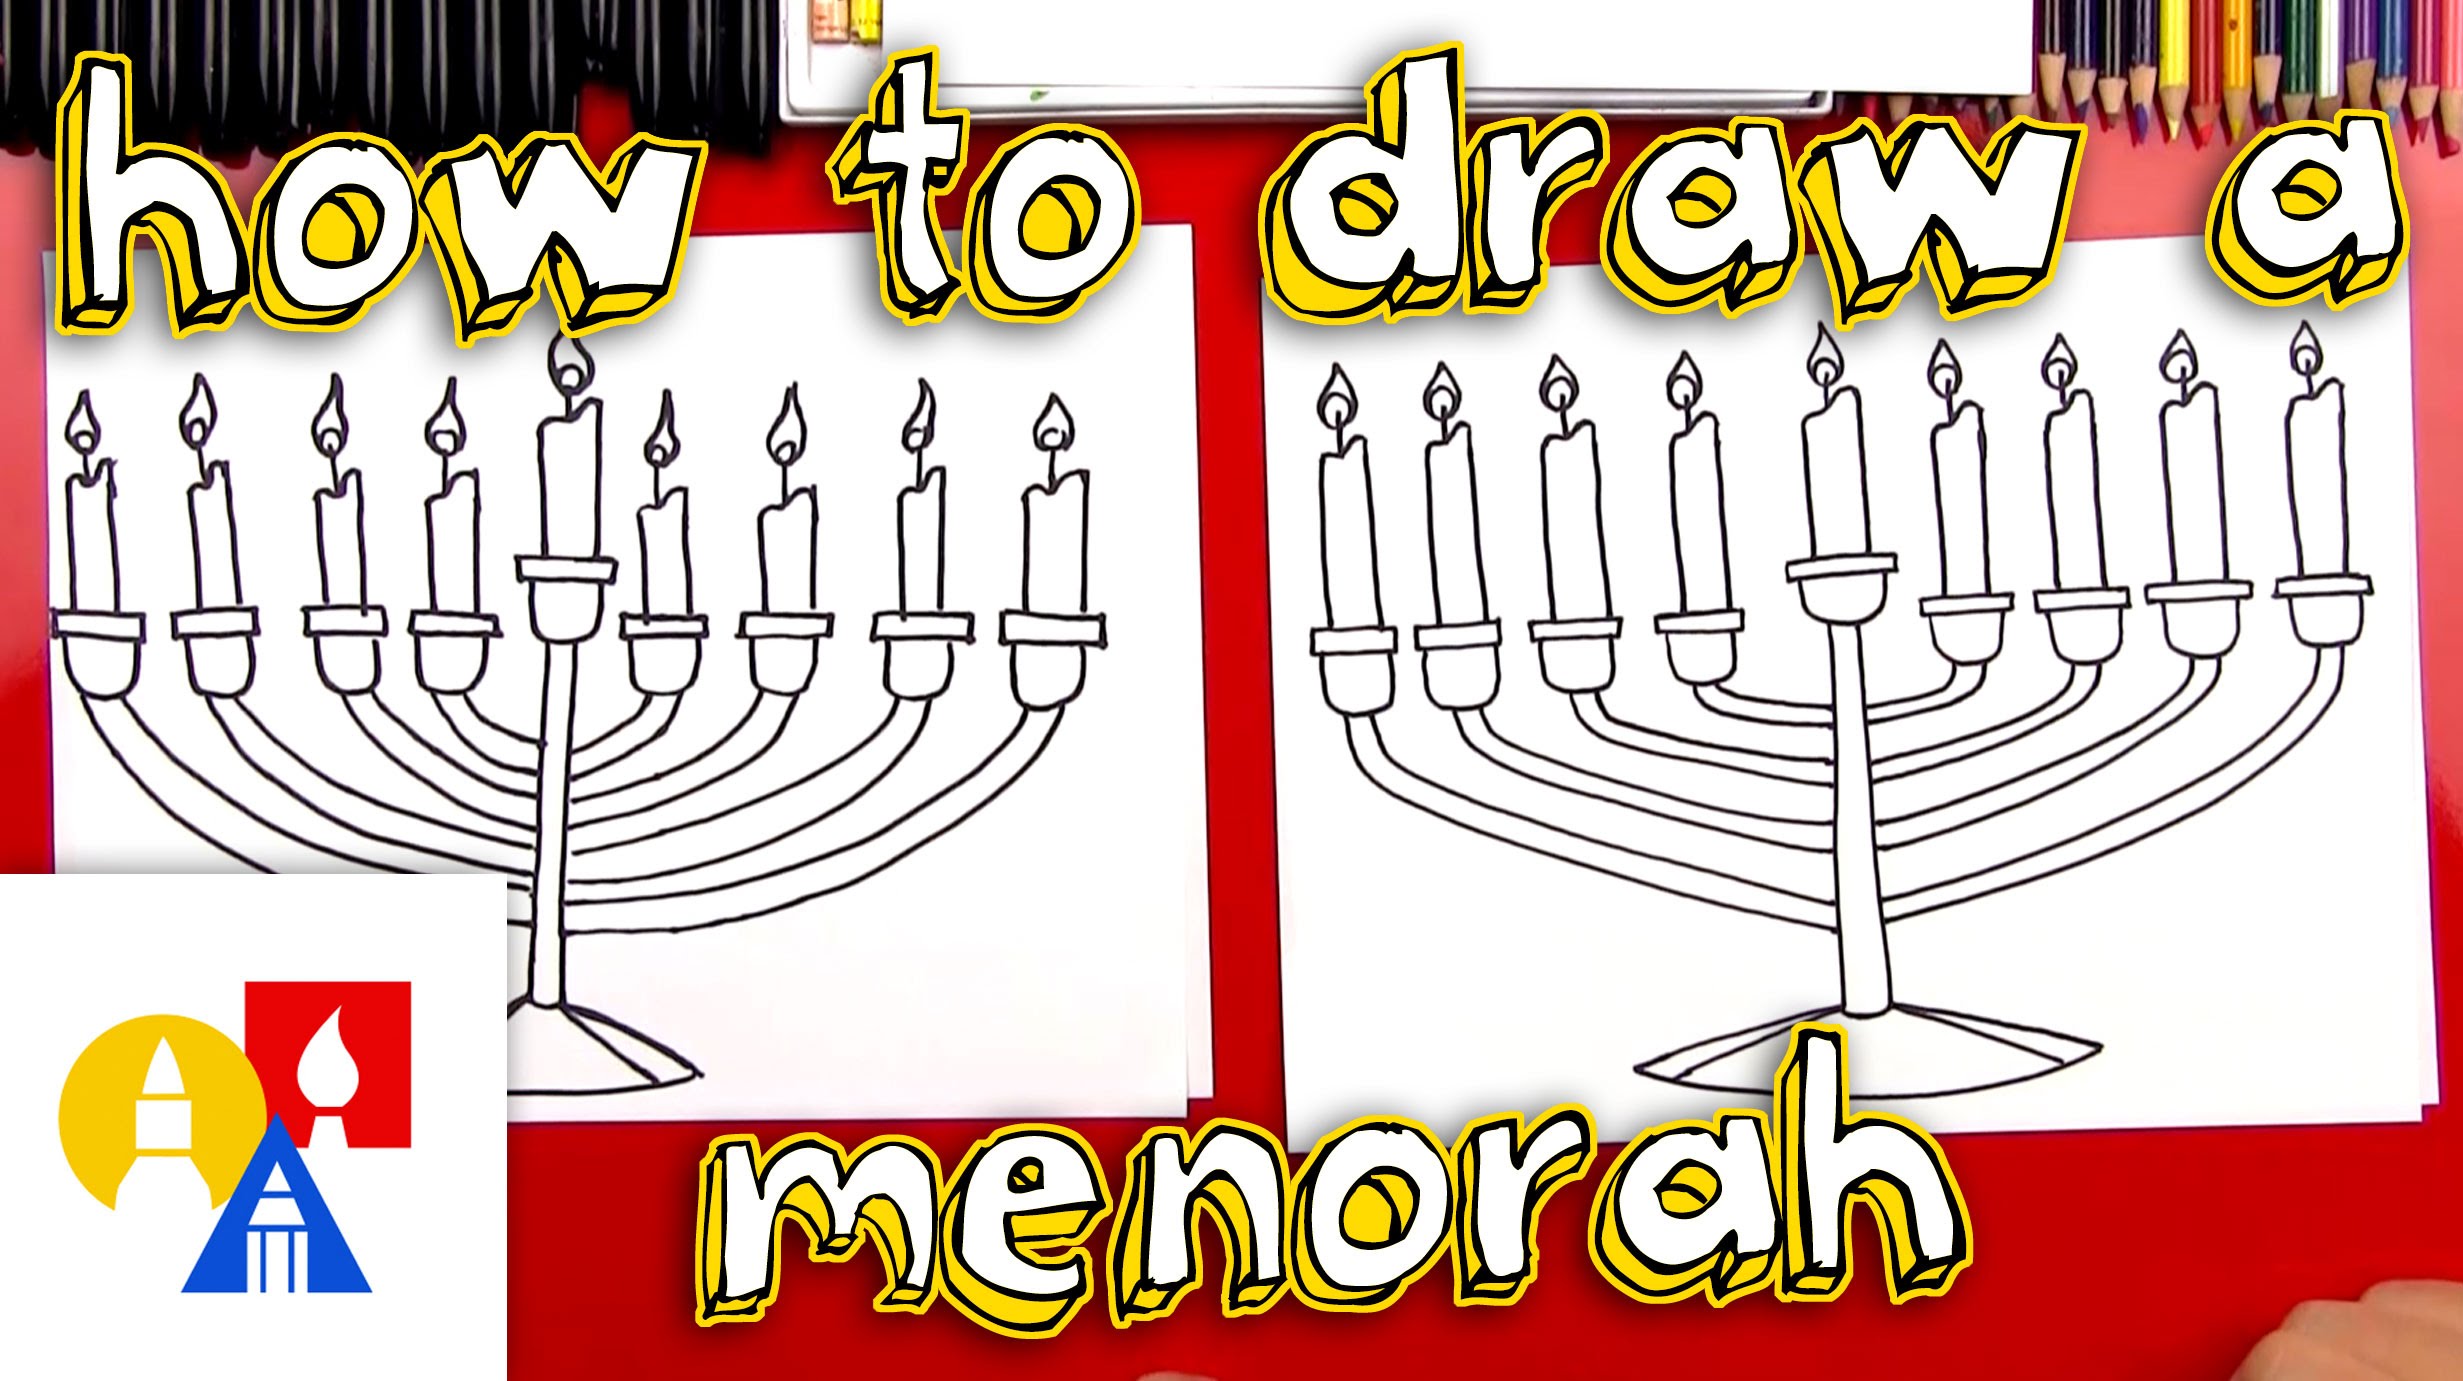 Hanukkah Menorah Drawing at GetDrawings Free download